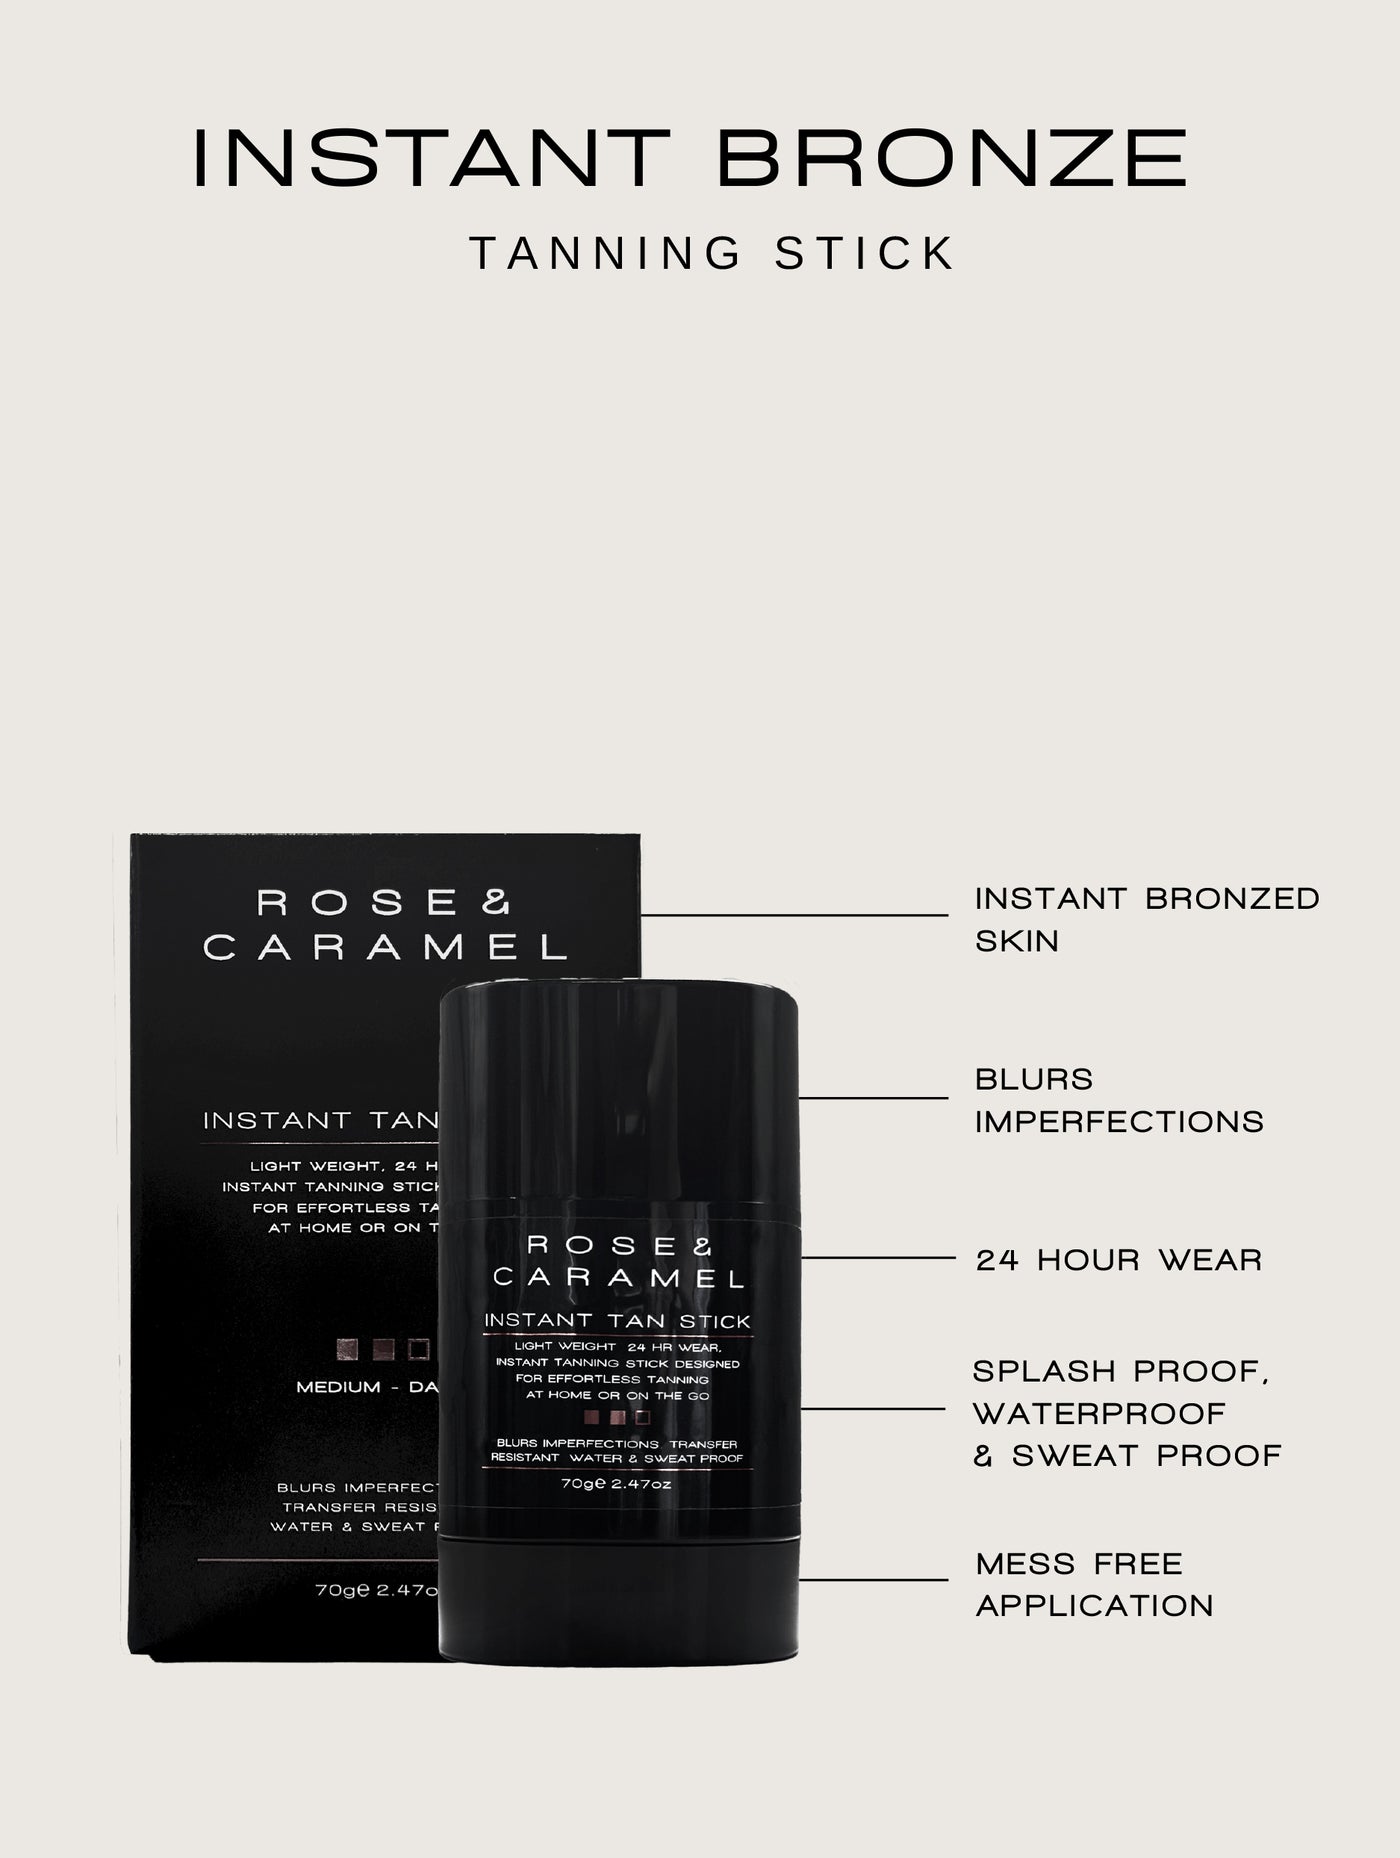 instant tanning stick, instant tan stick, bronze tanning stick, transfer free tanning stick, instant tan stick and mini mitt